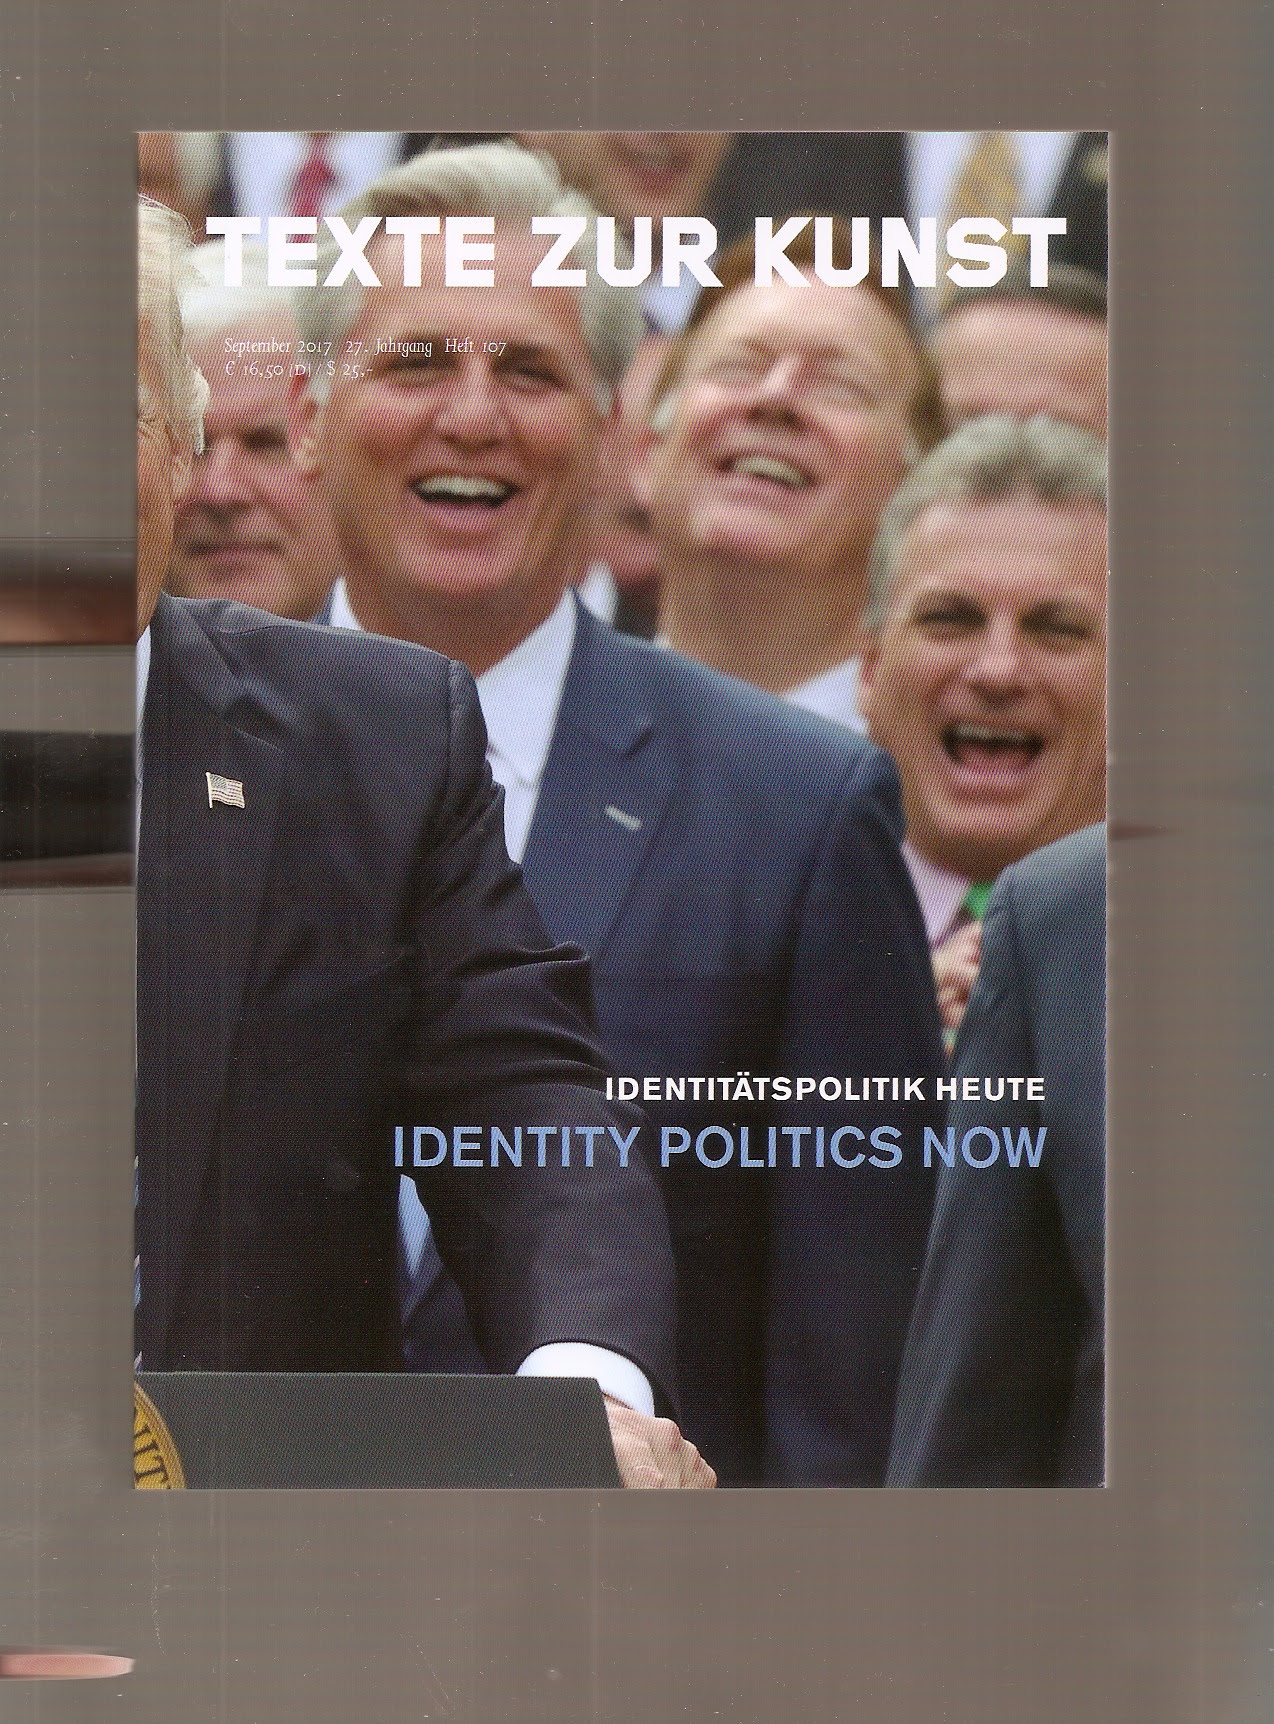 TEXTE ZUR KUNST (ed.) - Texte Zur Kunst 27/107 (Sept. 2017) Identity Politics